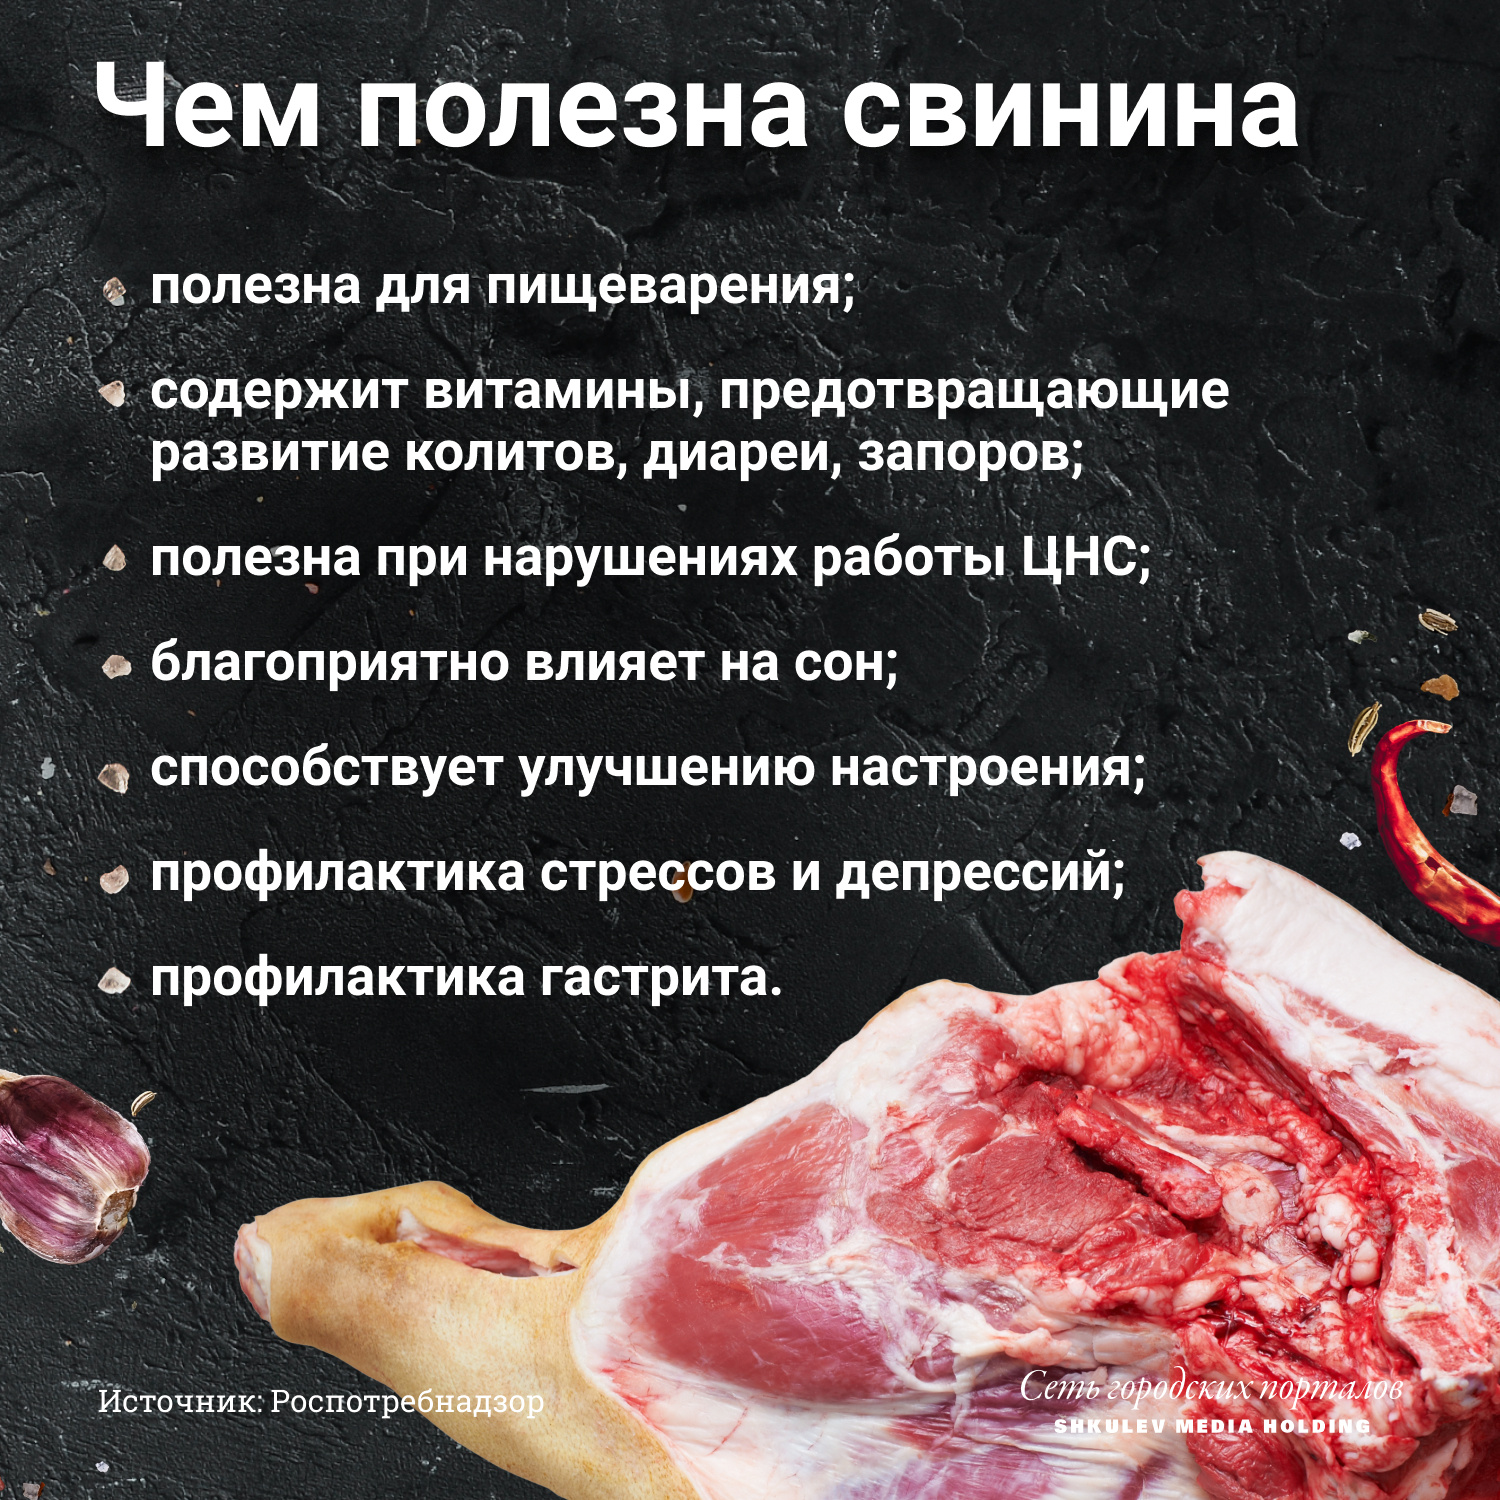 Свинина — мясо более жирное, чем говядина и баранина, но и у него немало ценных свойств